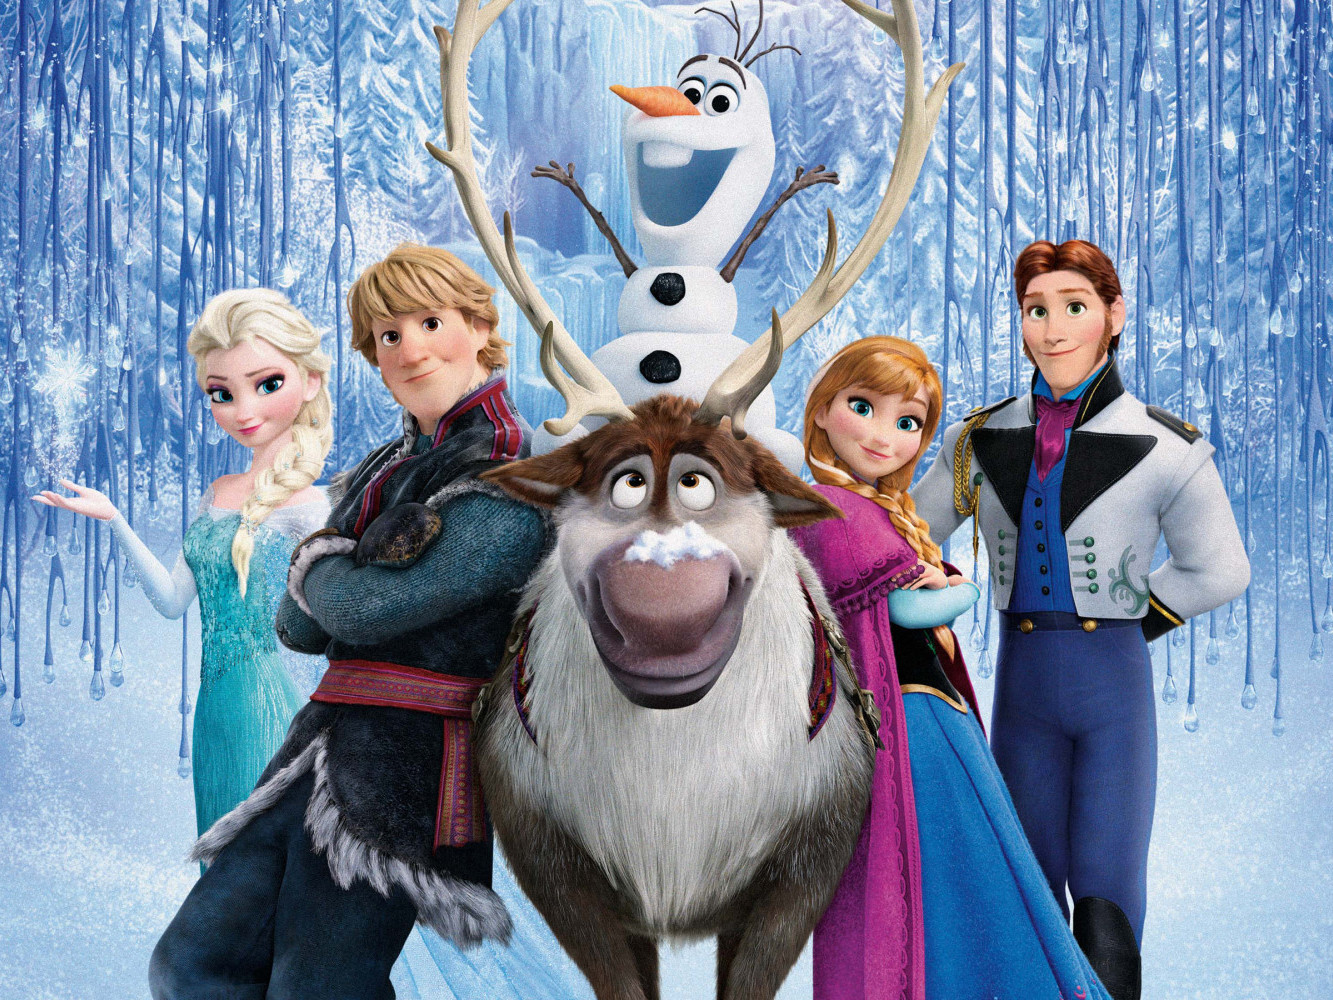 ВИДЕО: “Frozen” хүүхэлдэйн киноны гуравдугаар ангийг бүтээх талаар үзэгчид таамаг дэвшүүлж эхэлжээ 